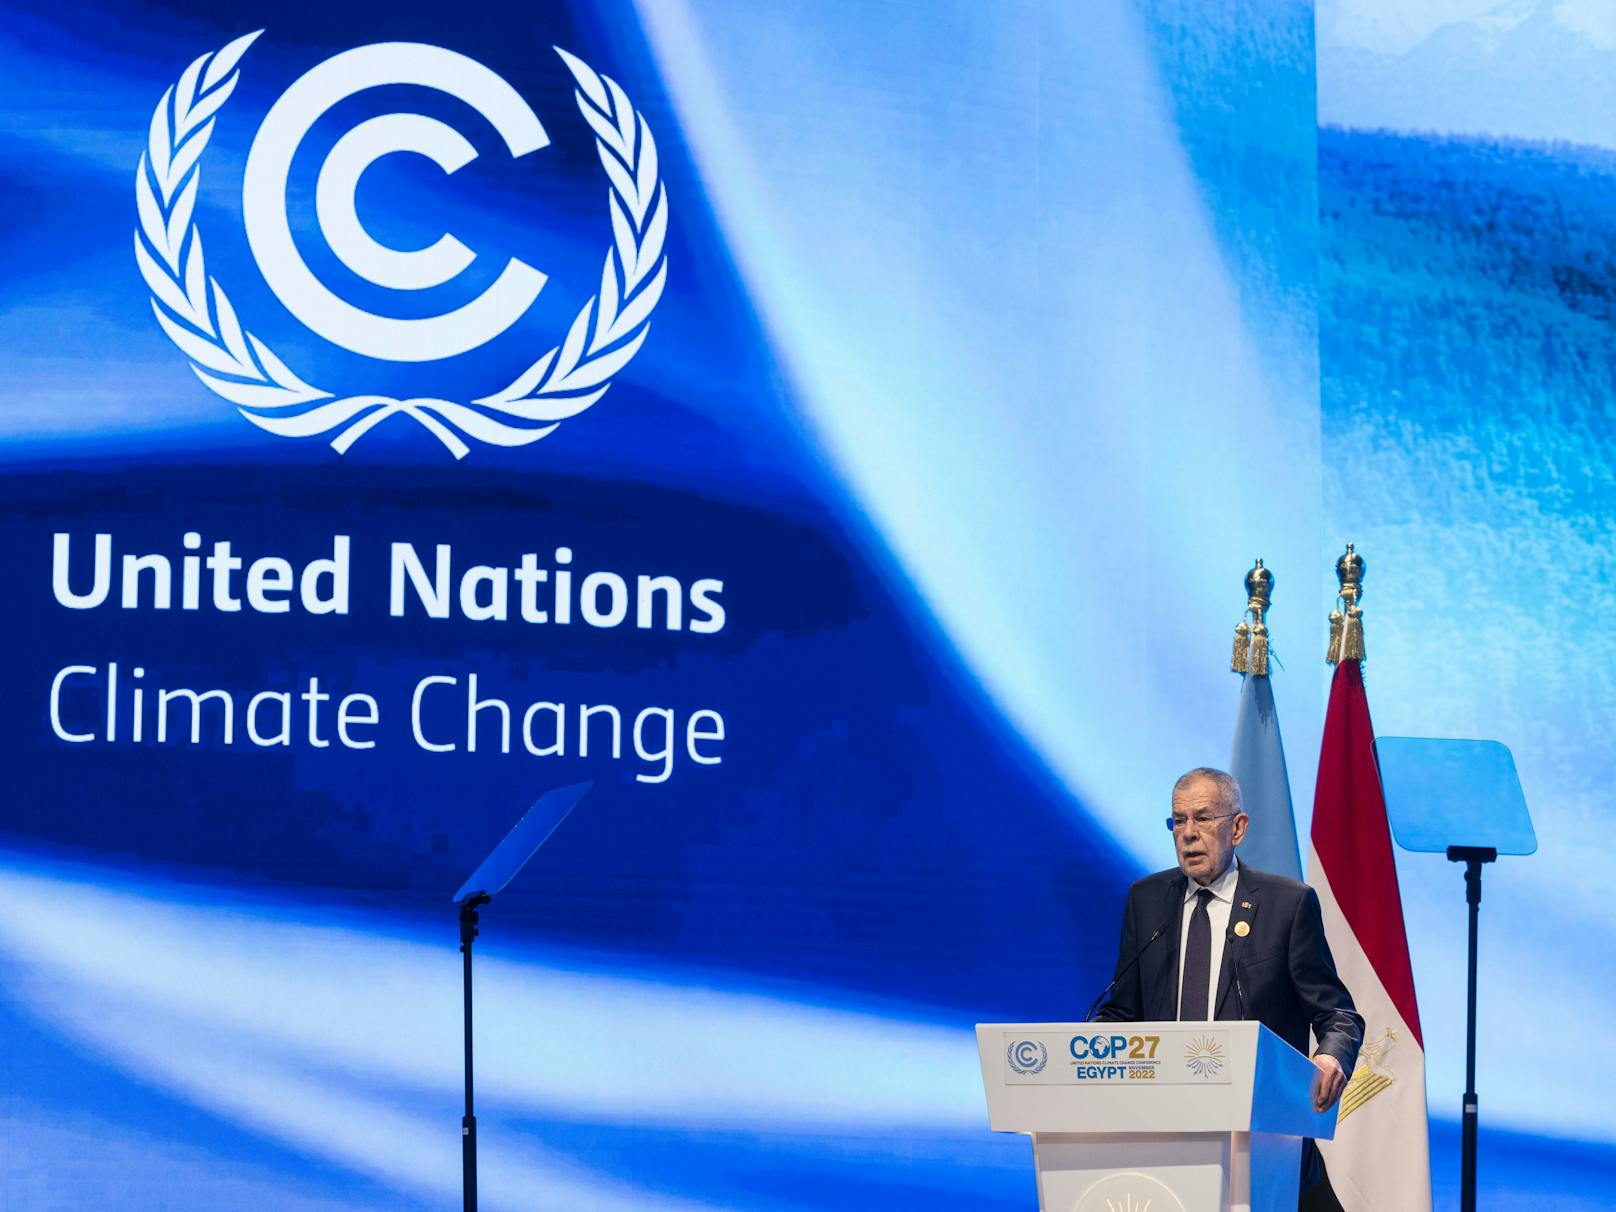 Bundespräsident Alexander Van der Bellen bei seiner Rede am Dienstag bei der COP27 in Sharm el-Sheikh.